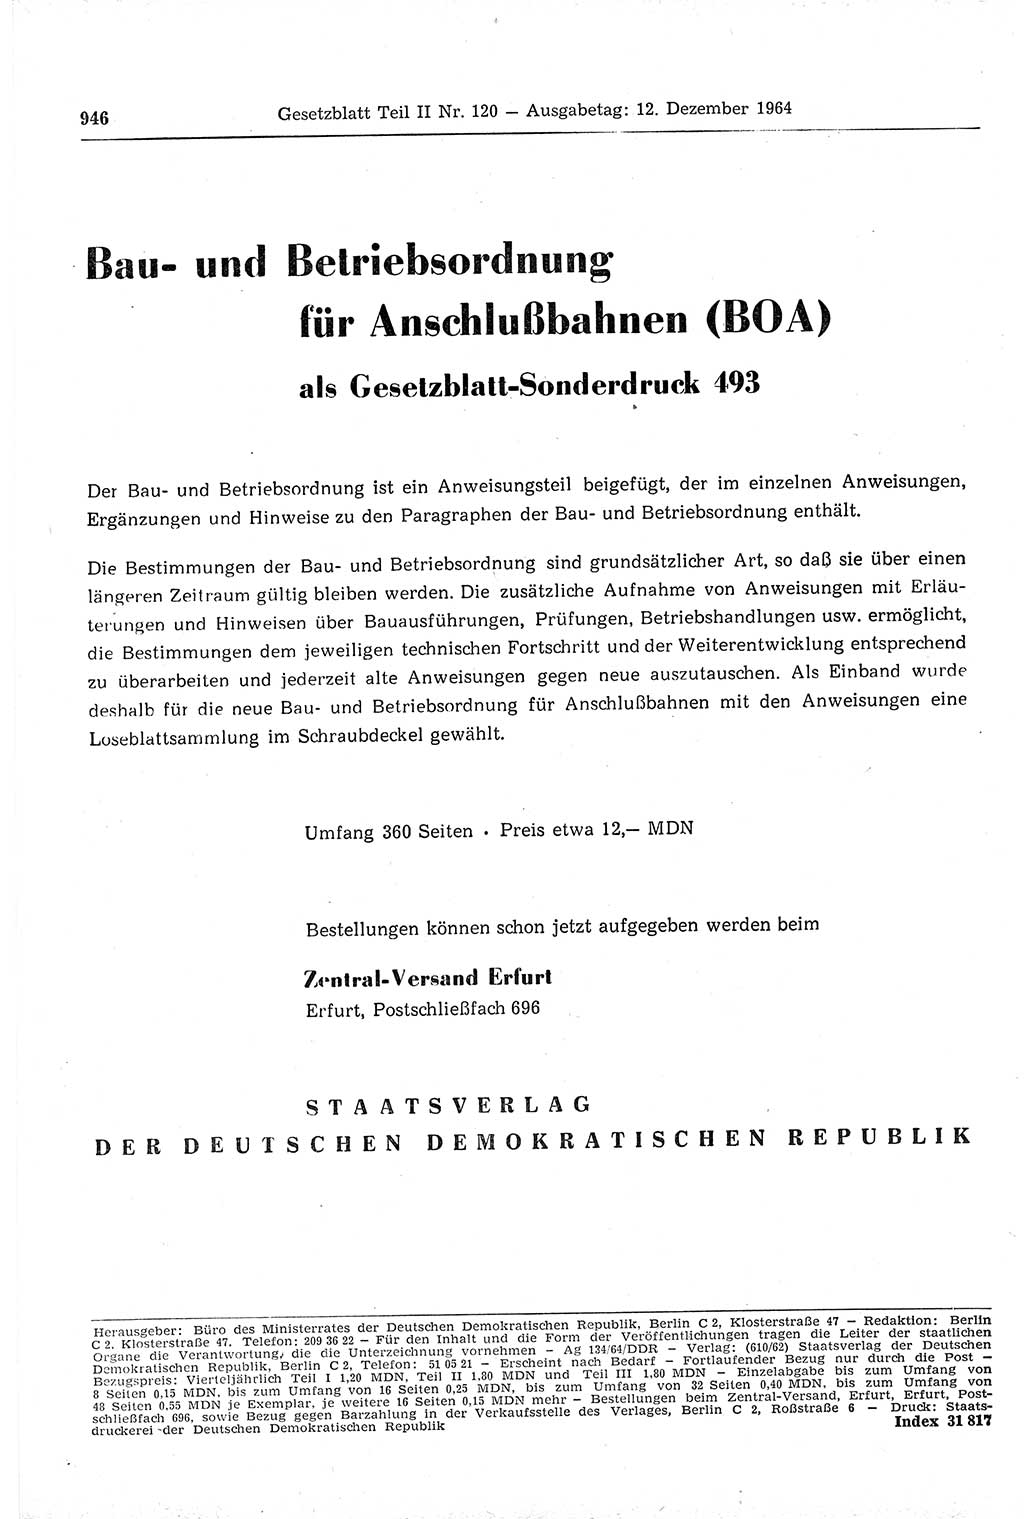 Gesetzblatt (GBl.) der Deutschen Demokratischen Republik (DDR) Teil ⅠⅠ 1964, Seite 946 (GBl. DDR ⅠⅠ 1964, S. 946)